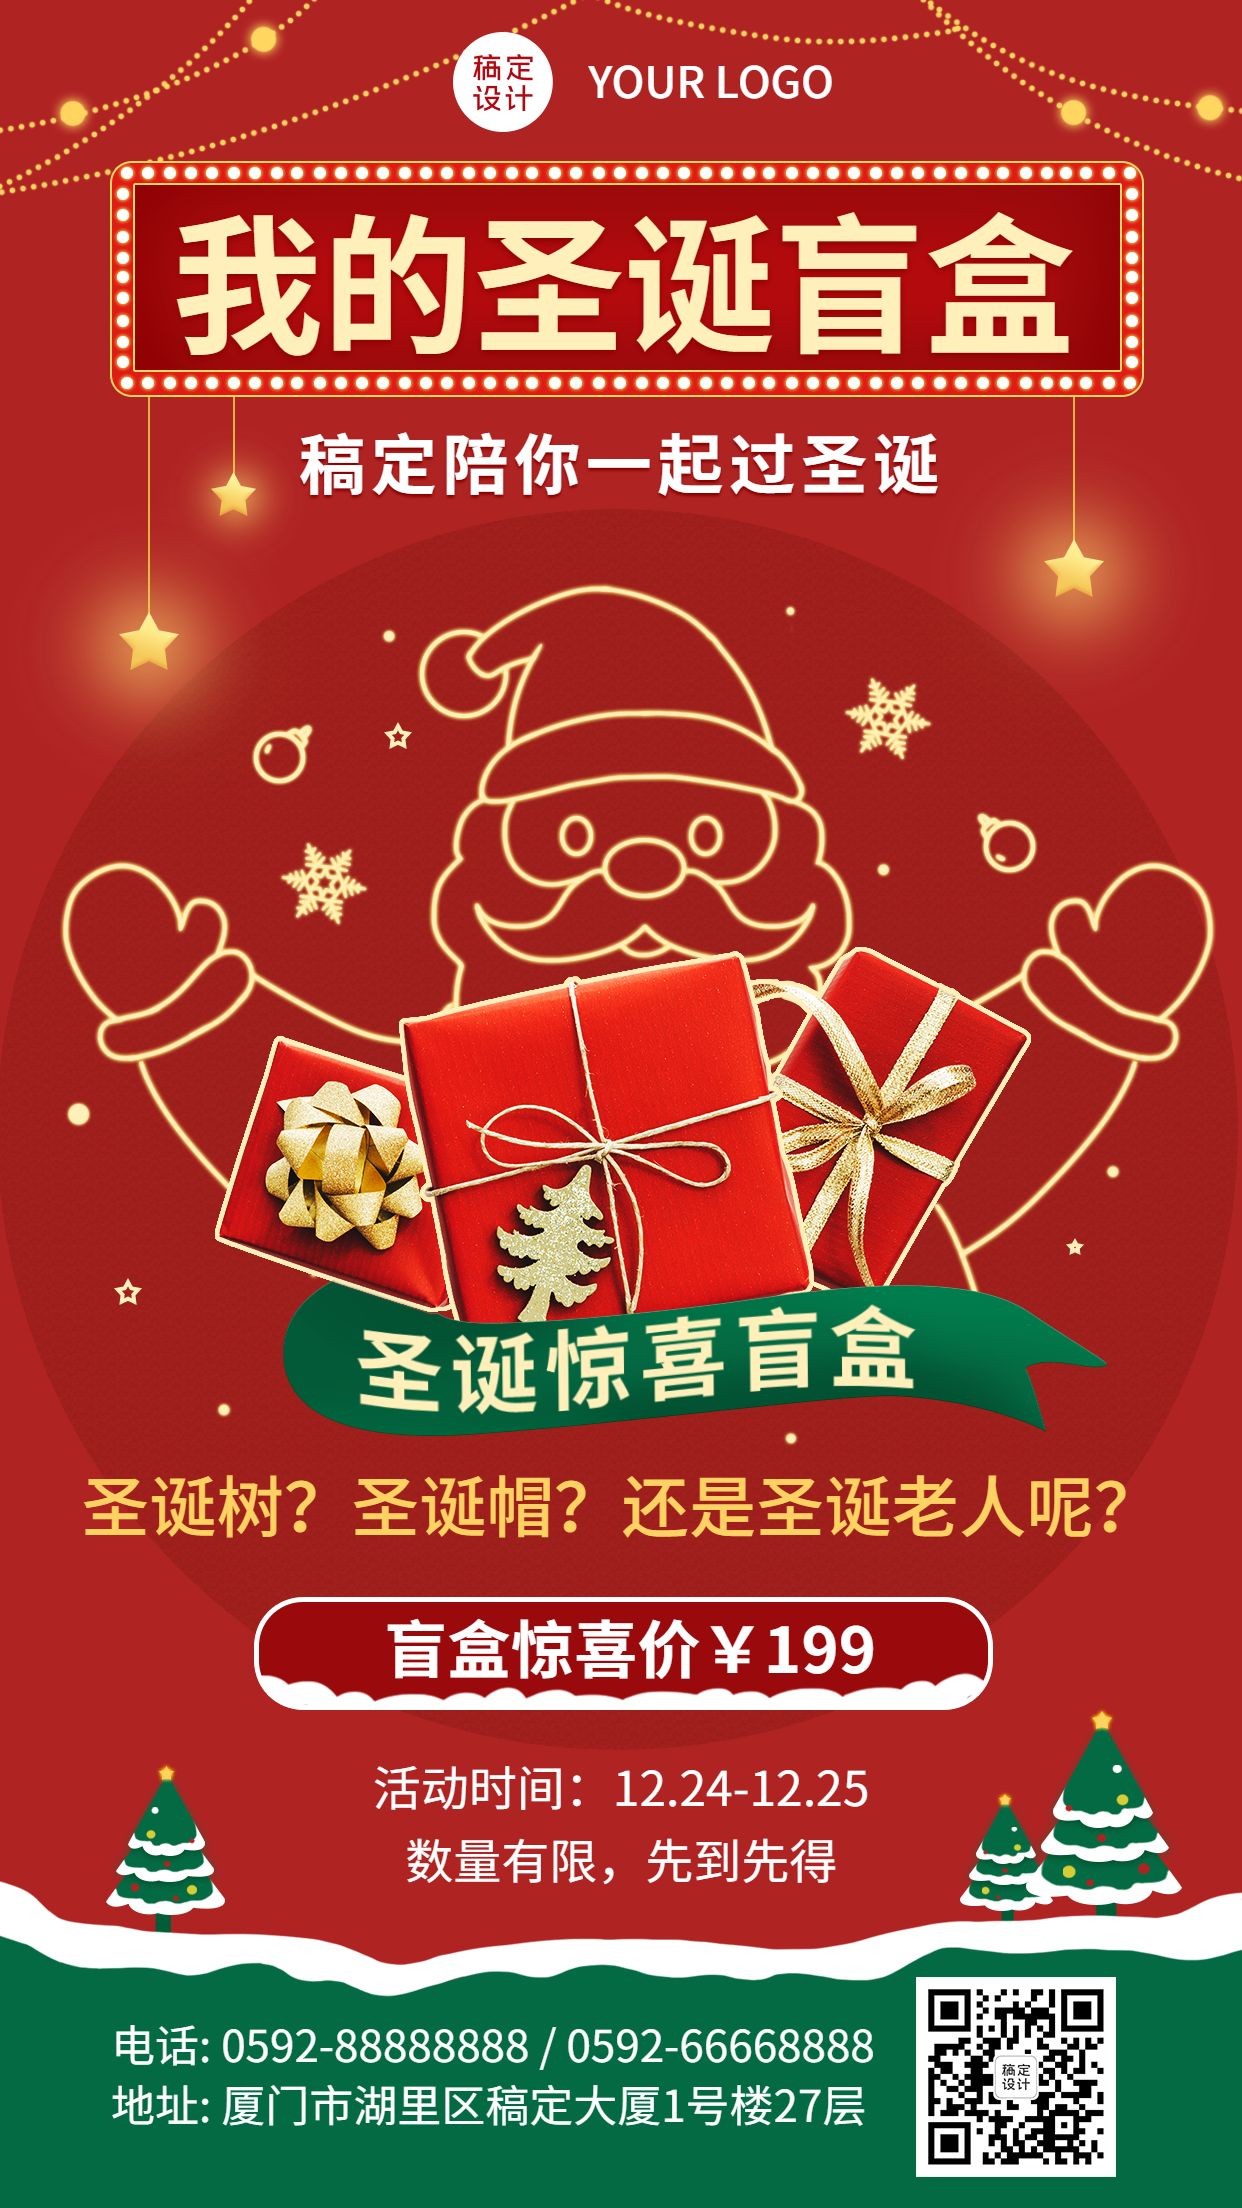 圣诞节活动促销产品展示手机海报预览效果